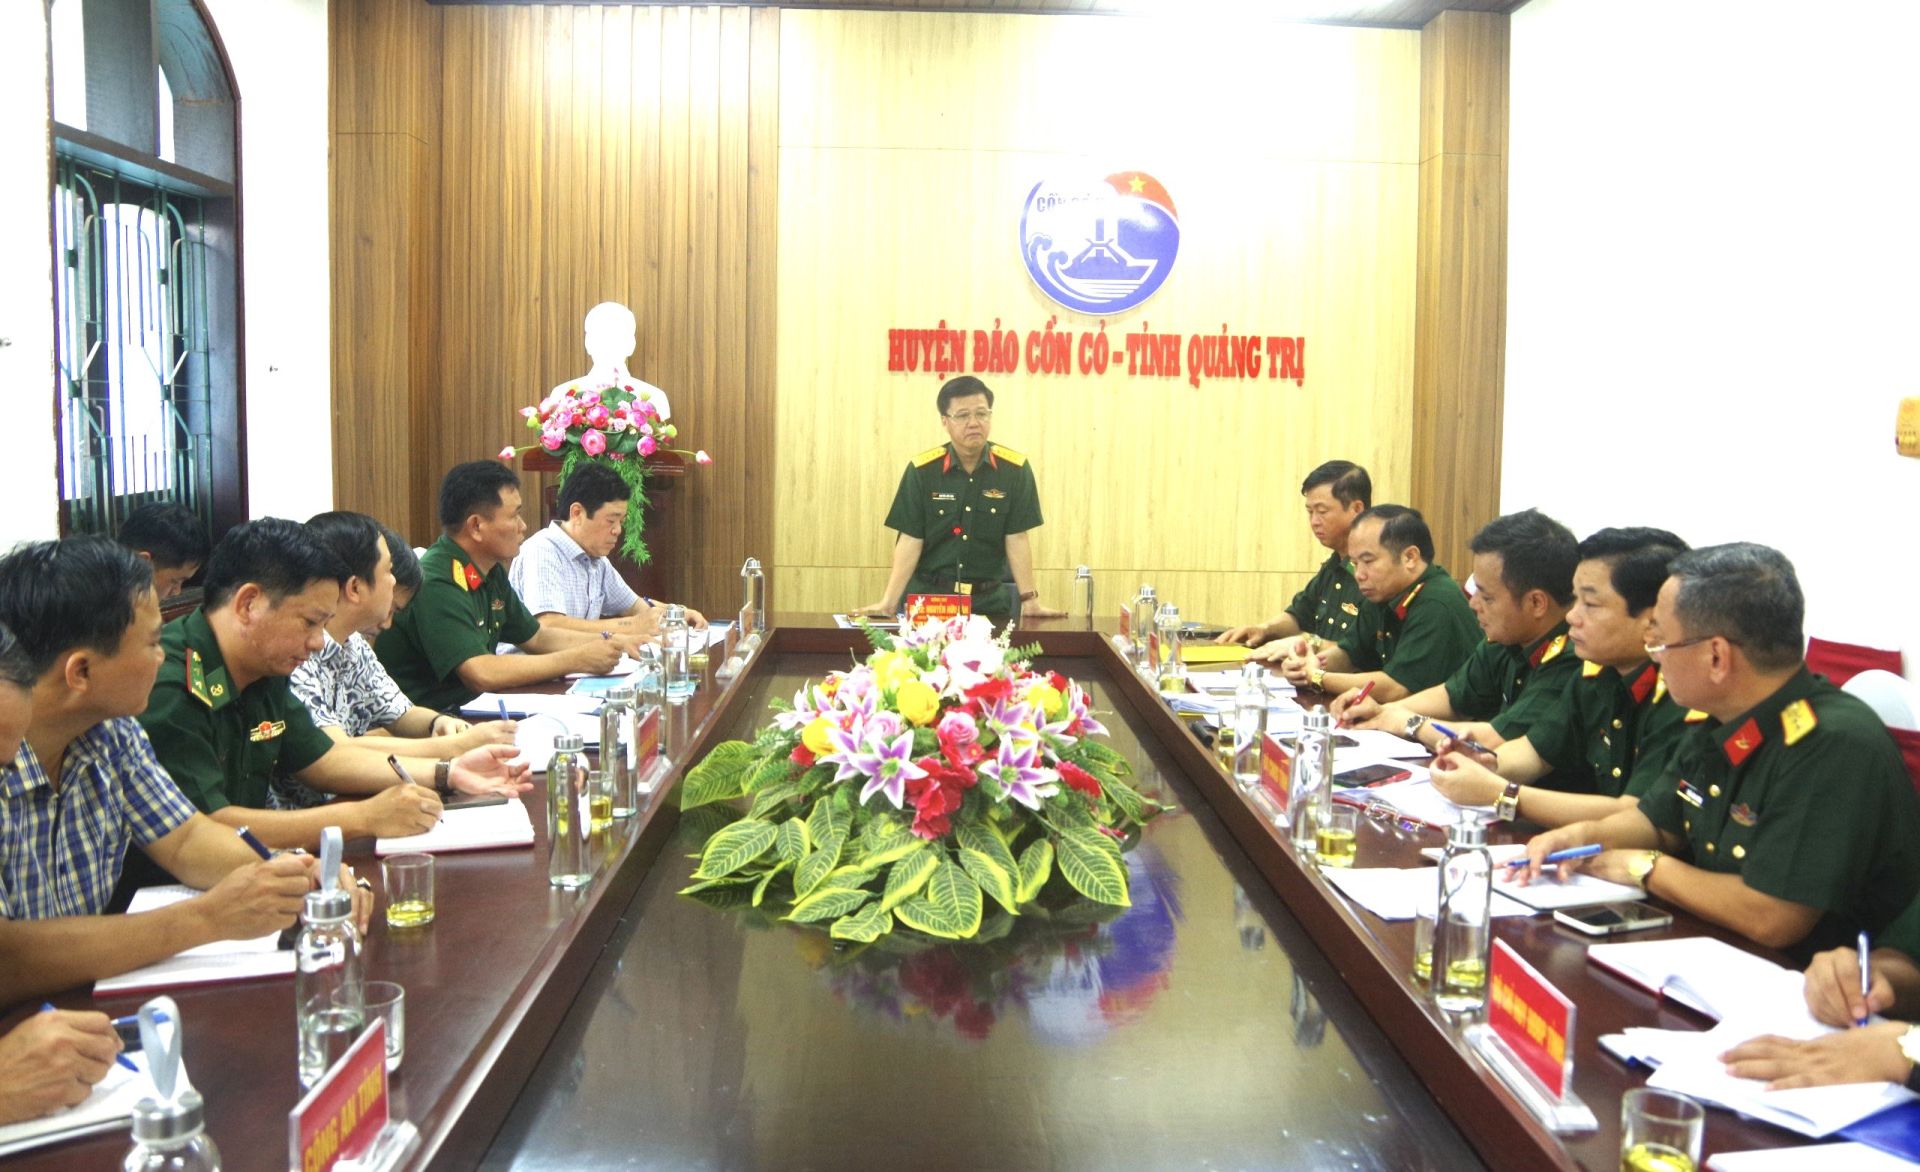 Ban Chỉ đạo diễn tập khu vực phòng thủ huyện đảo Cồn Cỏ - tỉnh Quảng Trị làm việc với UBND huyện về nội dung diễn tập khu vực phòng thủ